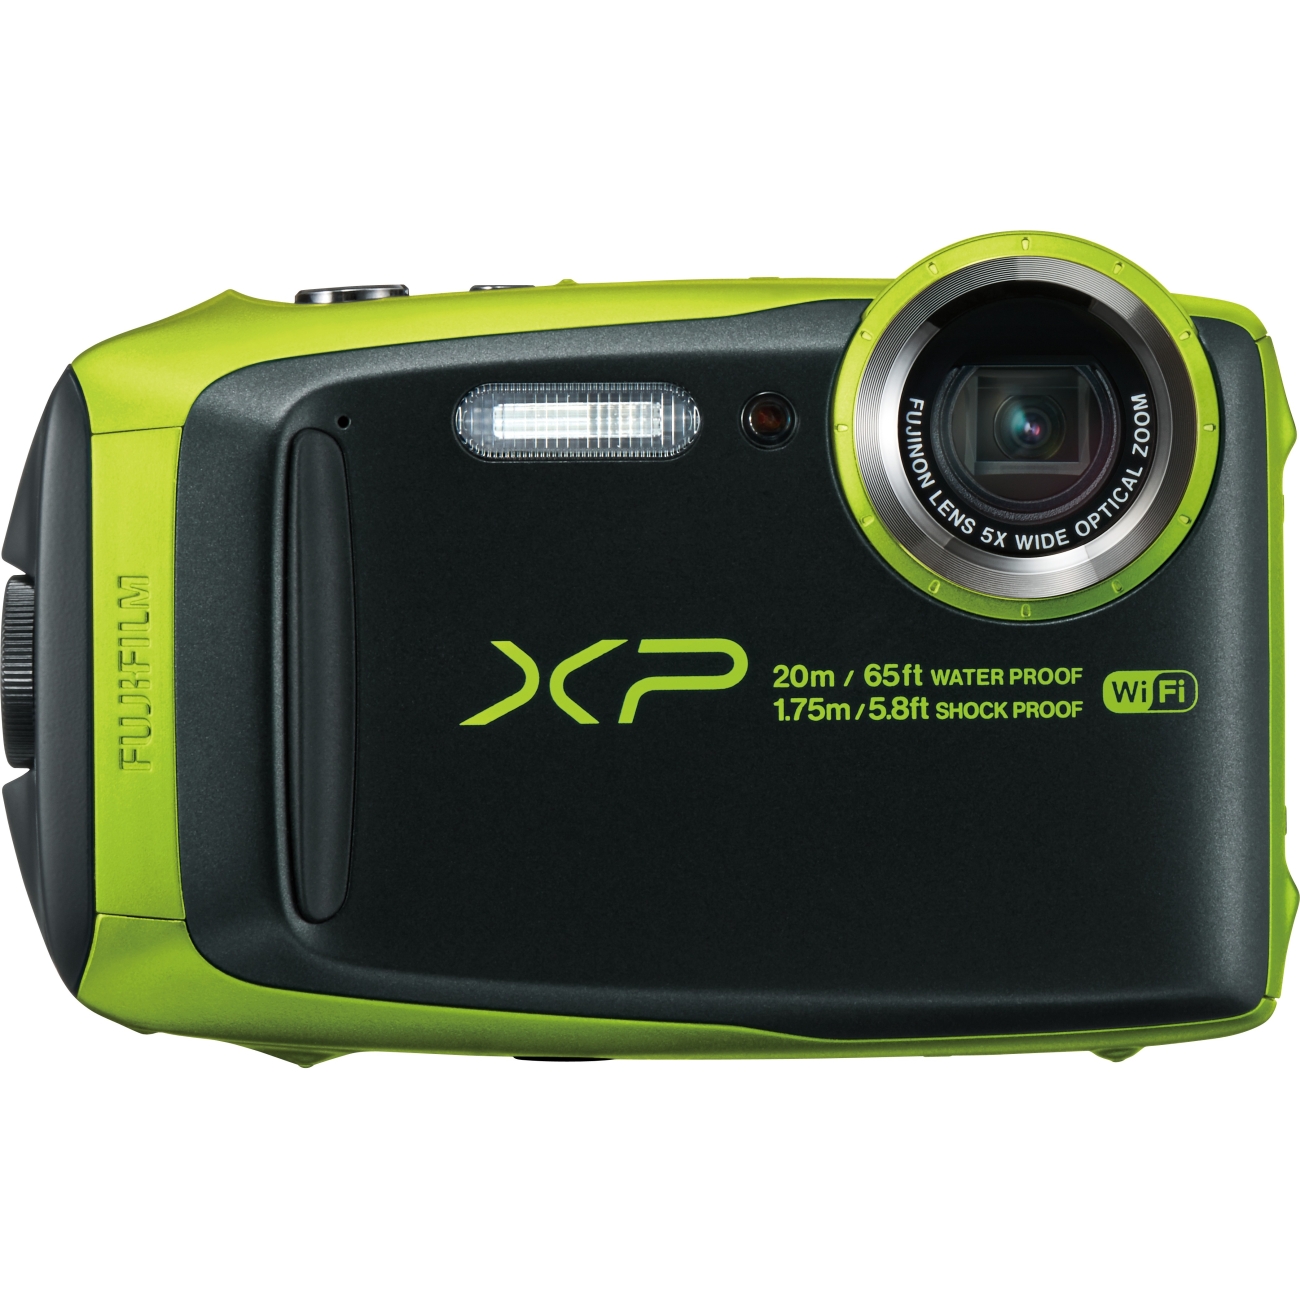 kloon markeerstift gerucht Fujifilm FinePix XP120 Digital Camera - Lime - Walmart.com